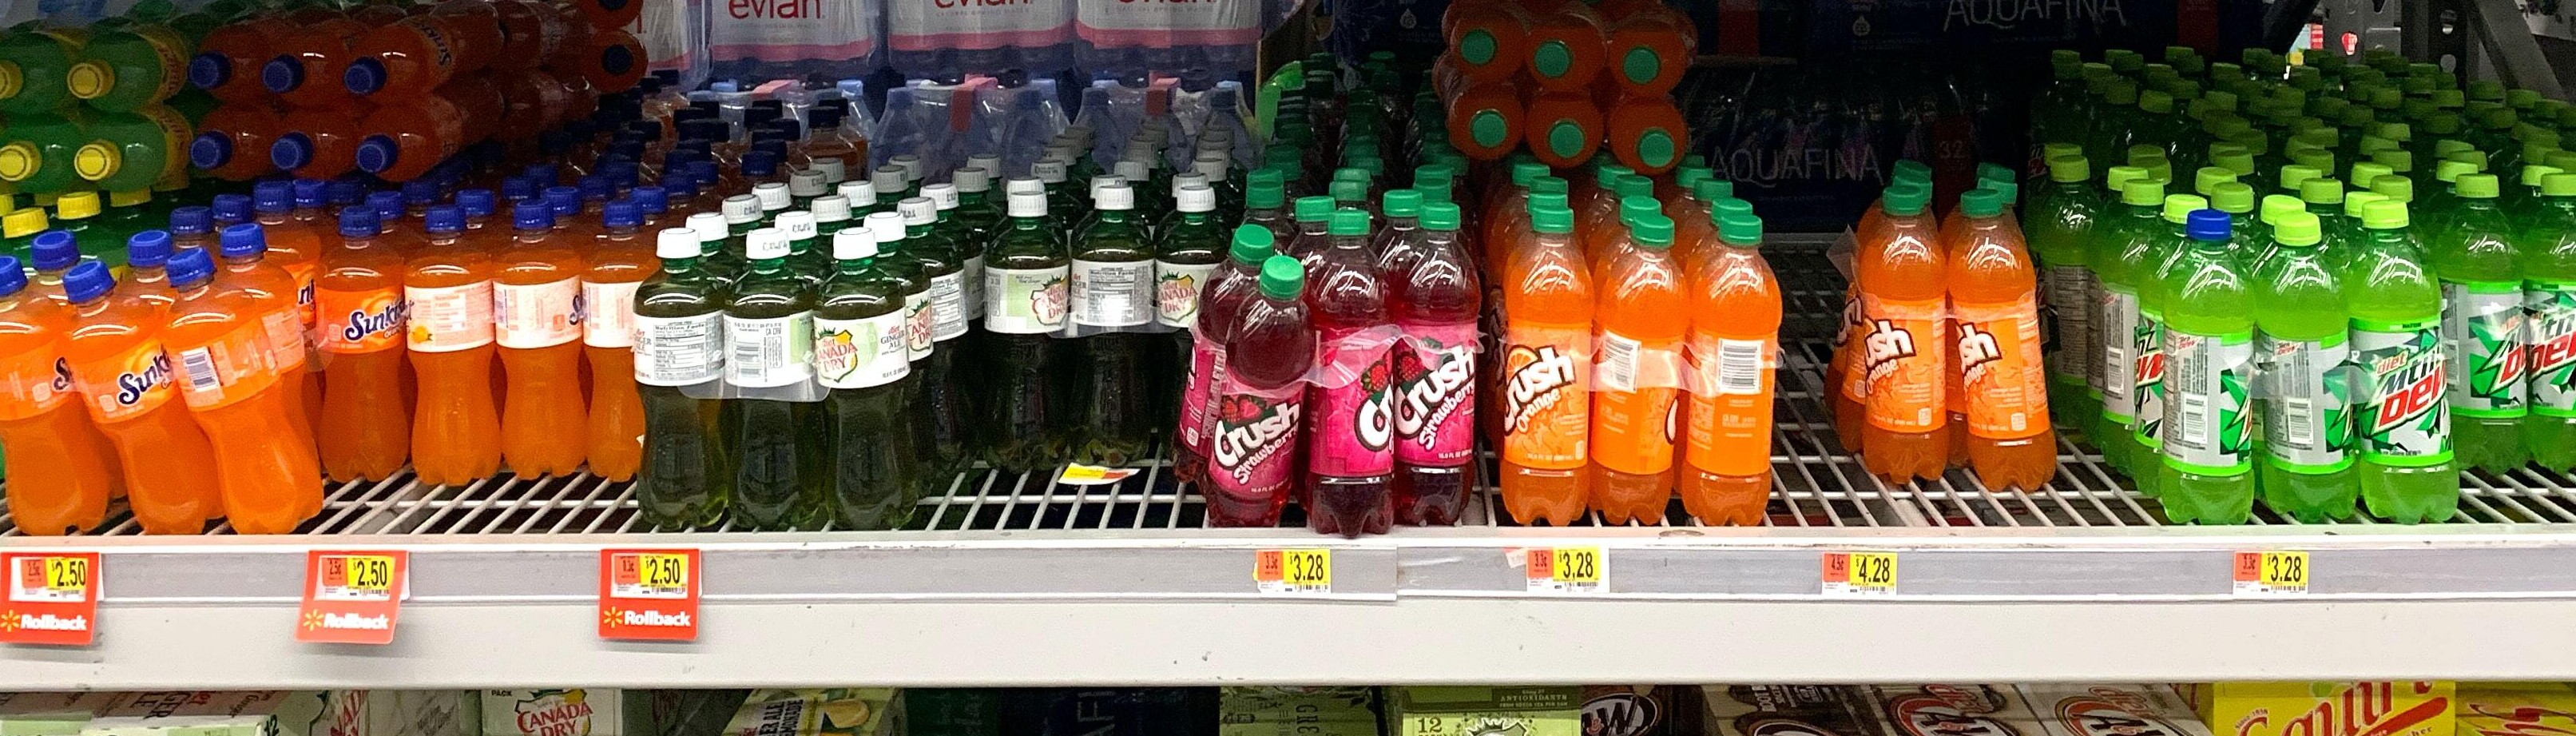 plastic beverage bottles on store shelf